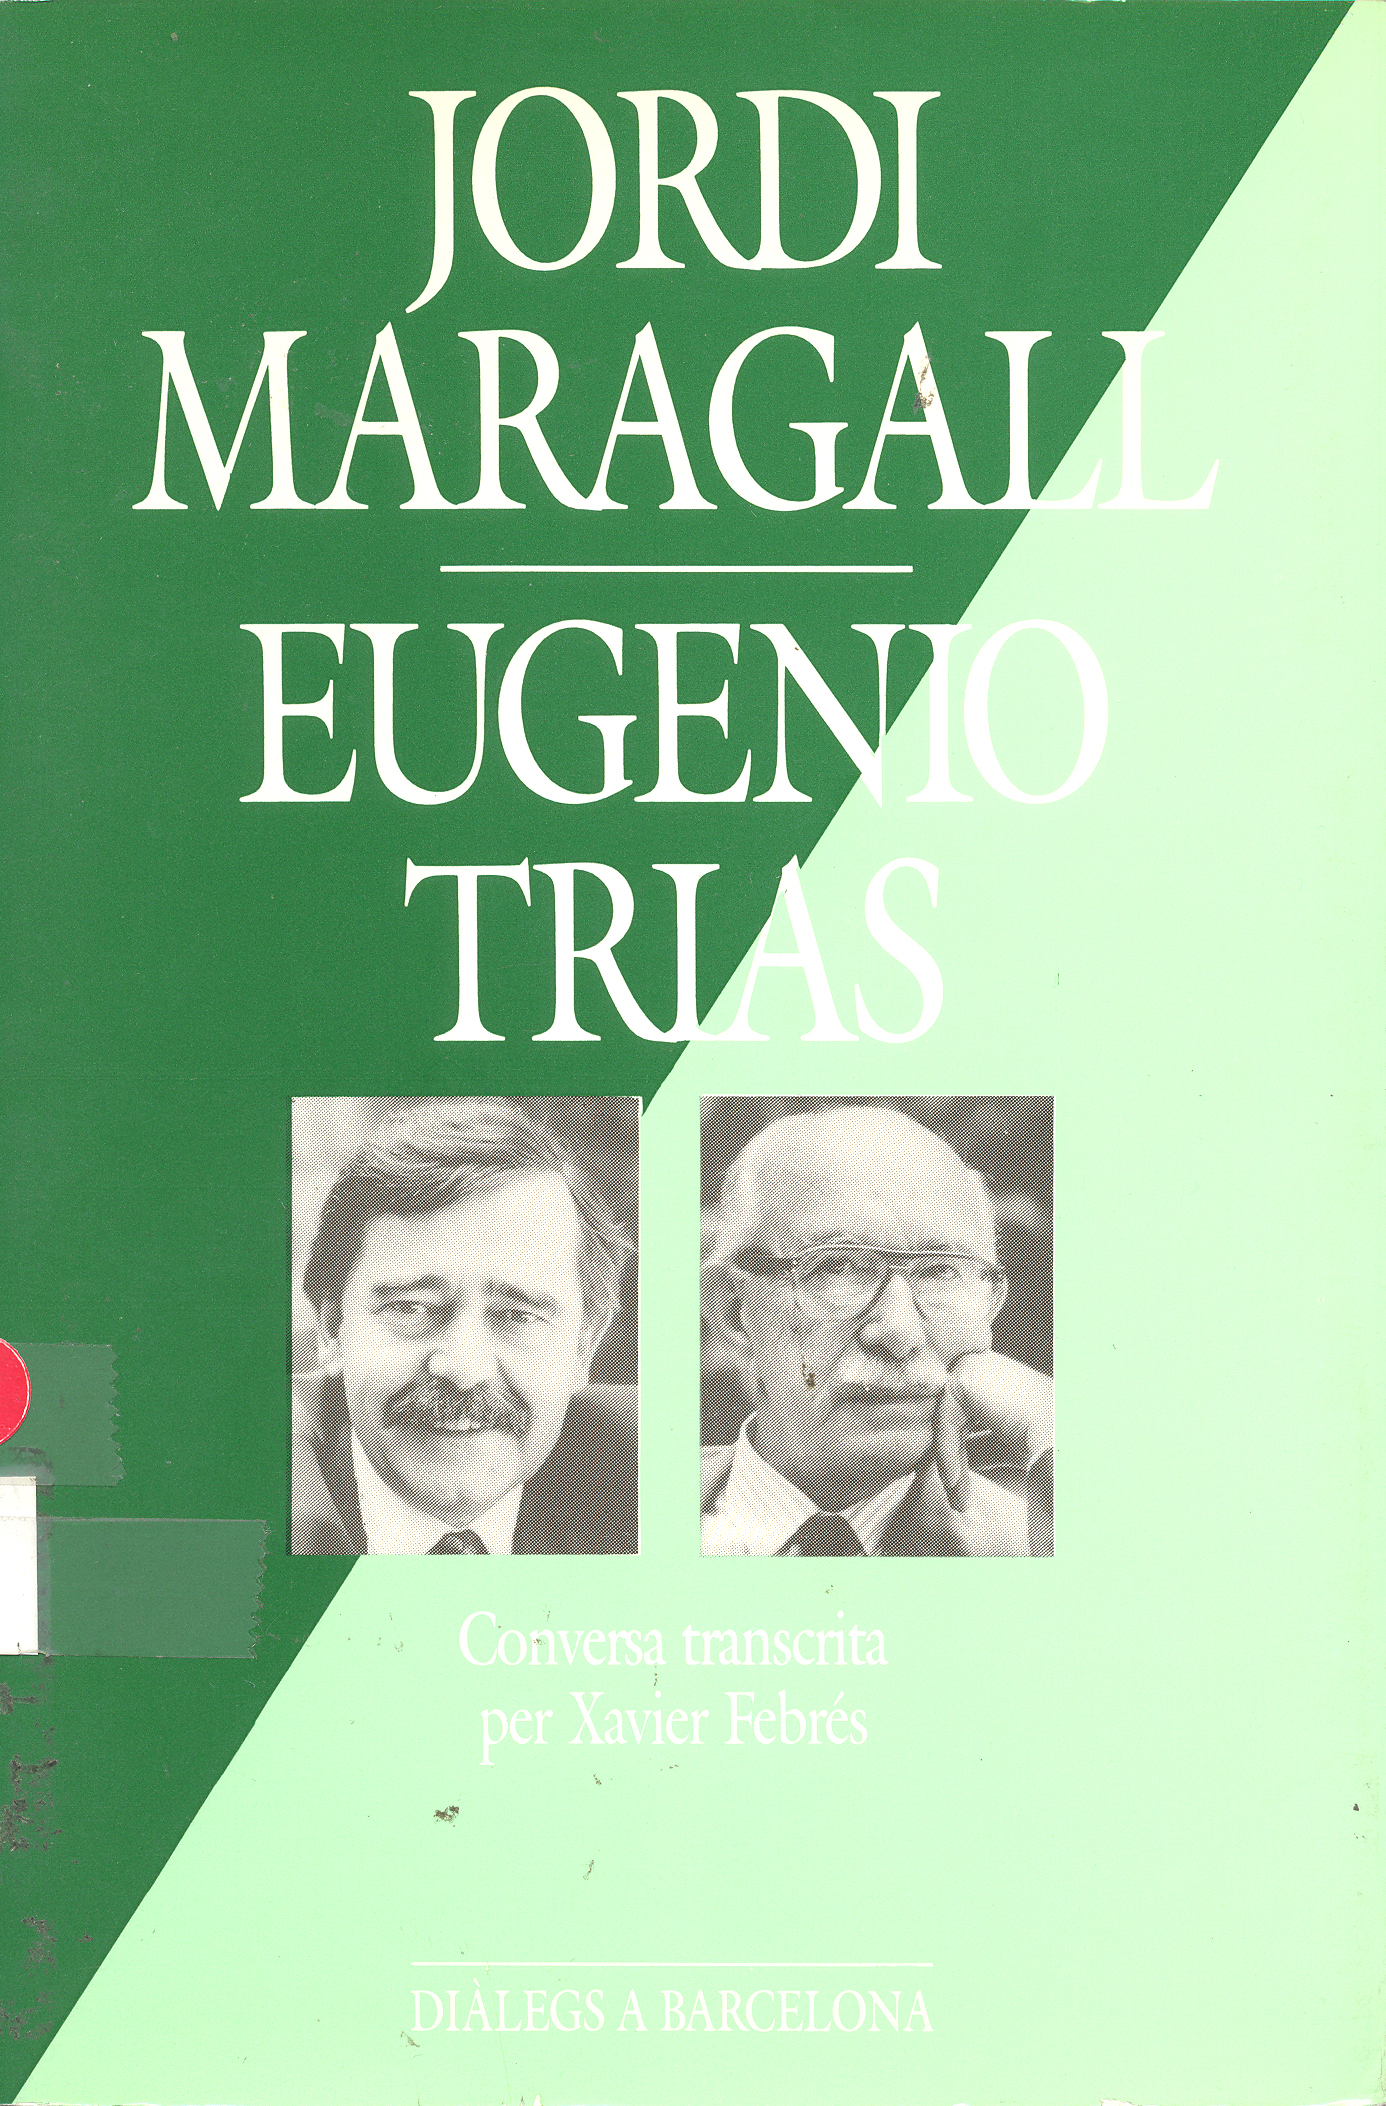 Jordi Maragall, Eugeni Trias